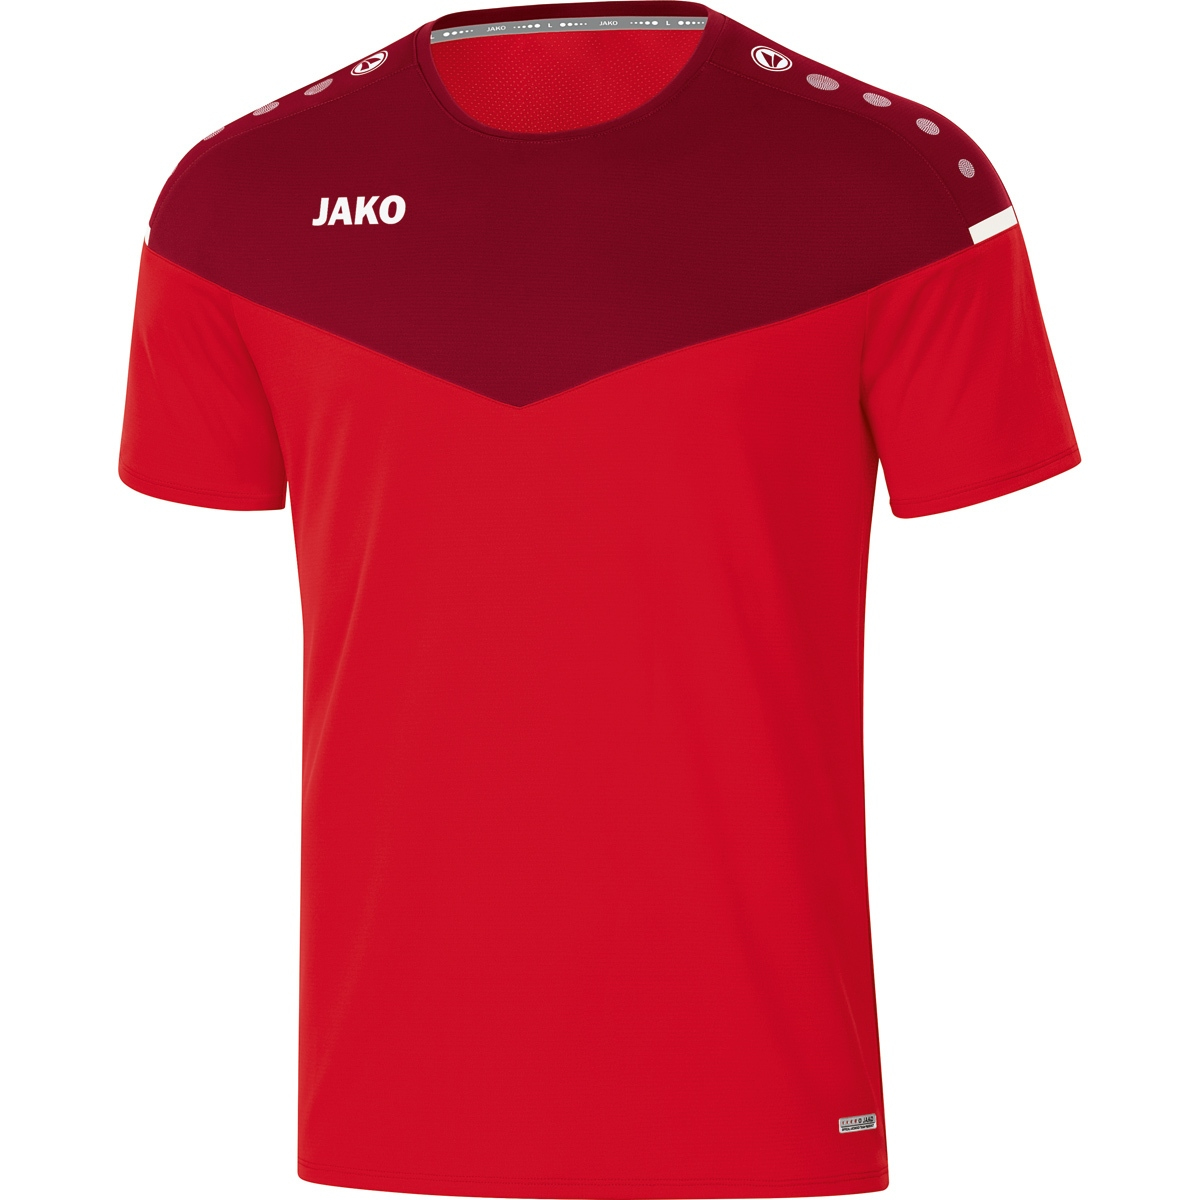 T-Shirt JAKO Champ 2.0 rot/weinrot, Herren, 6120 Gr. S,